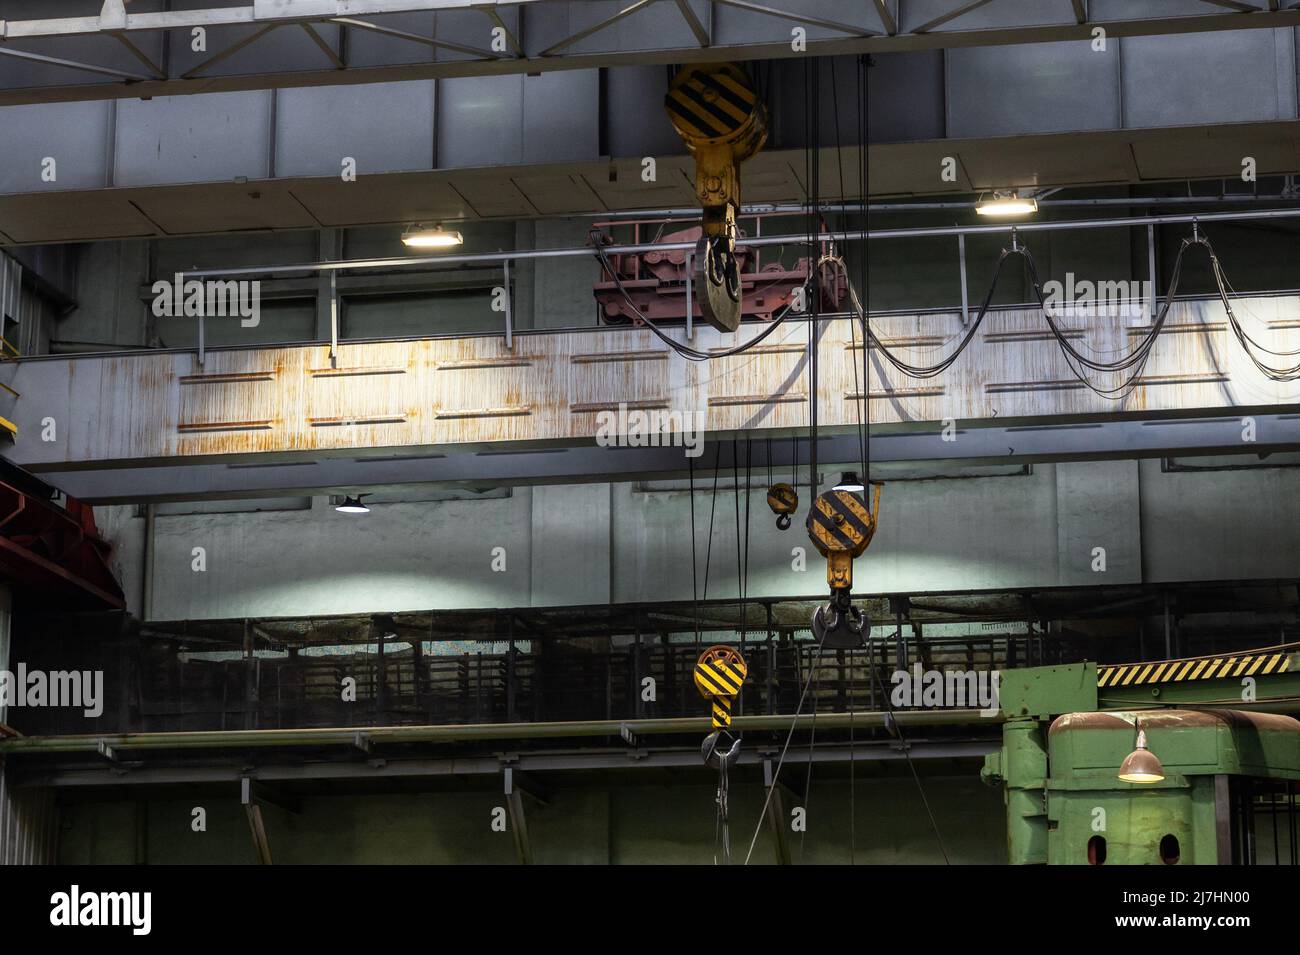 Krane mit starken Haken unter der Decke der Industriehalle Stockfoto